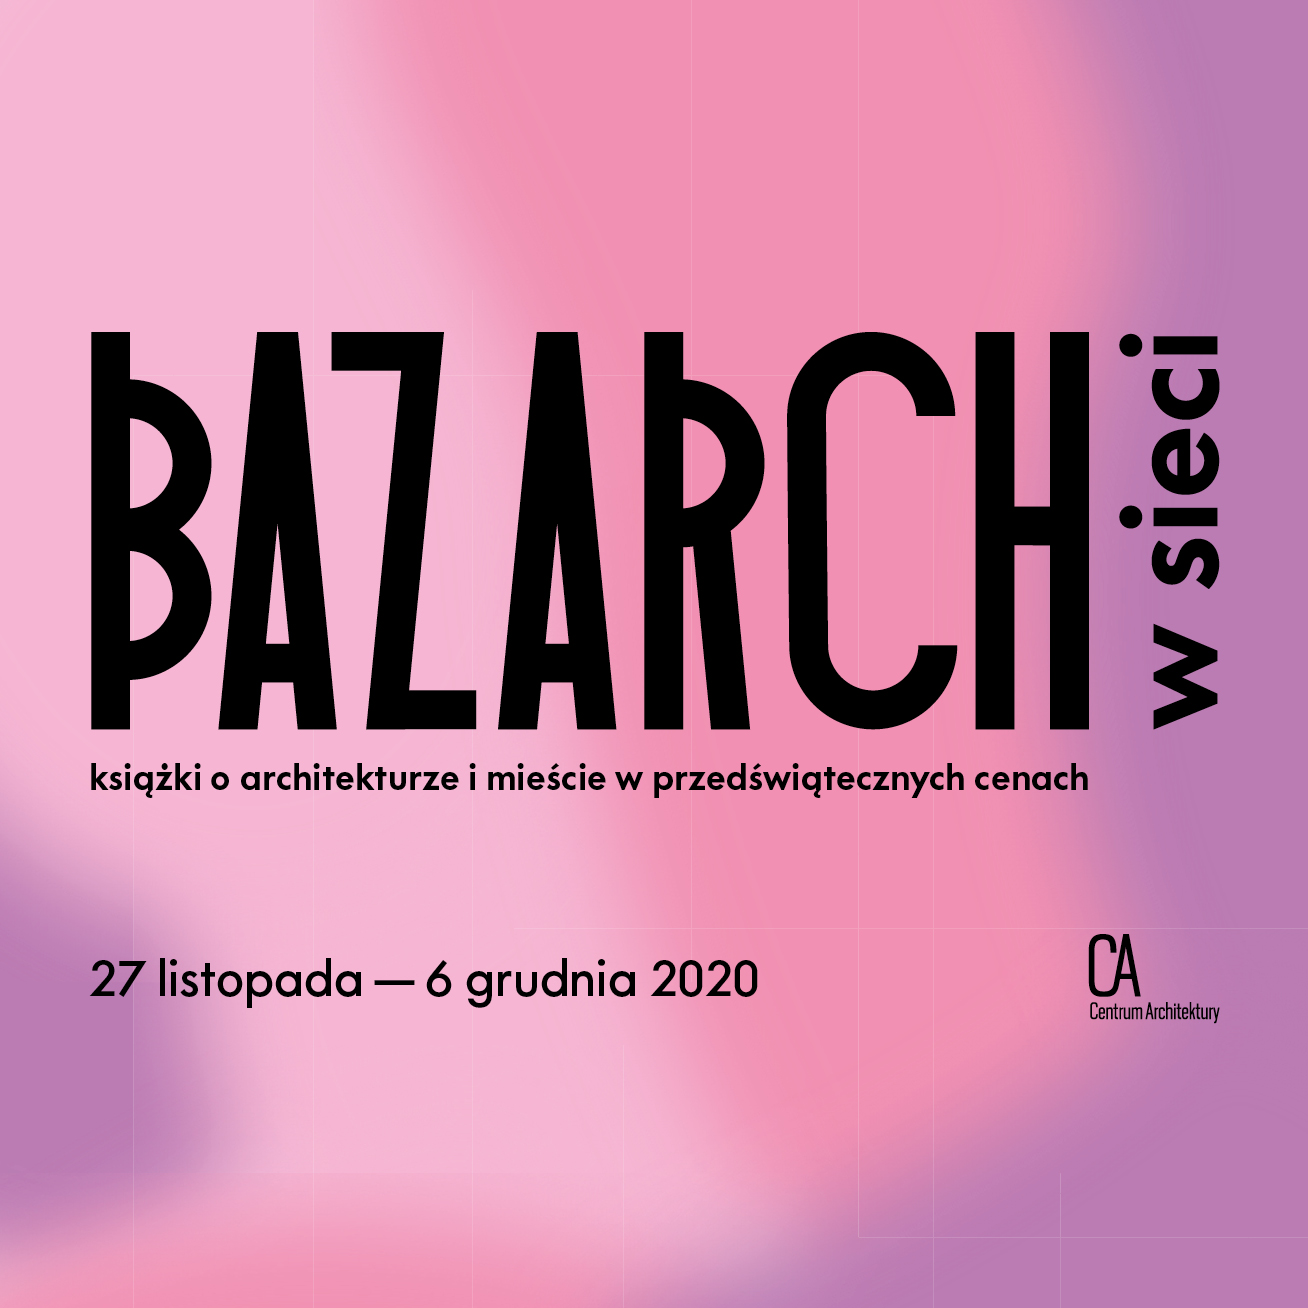 Bazarch w sieci – targi książki o architekturze i mieście 27 listopada – 6 grudnia 